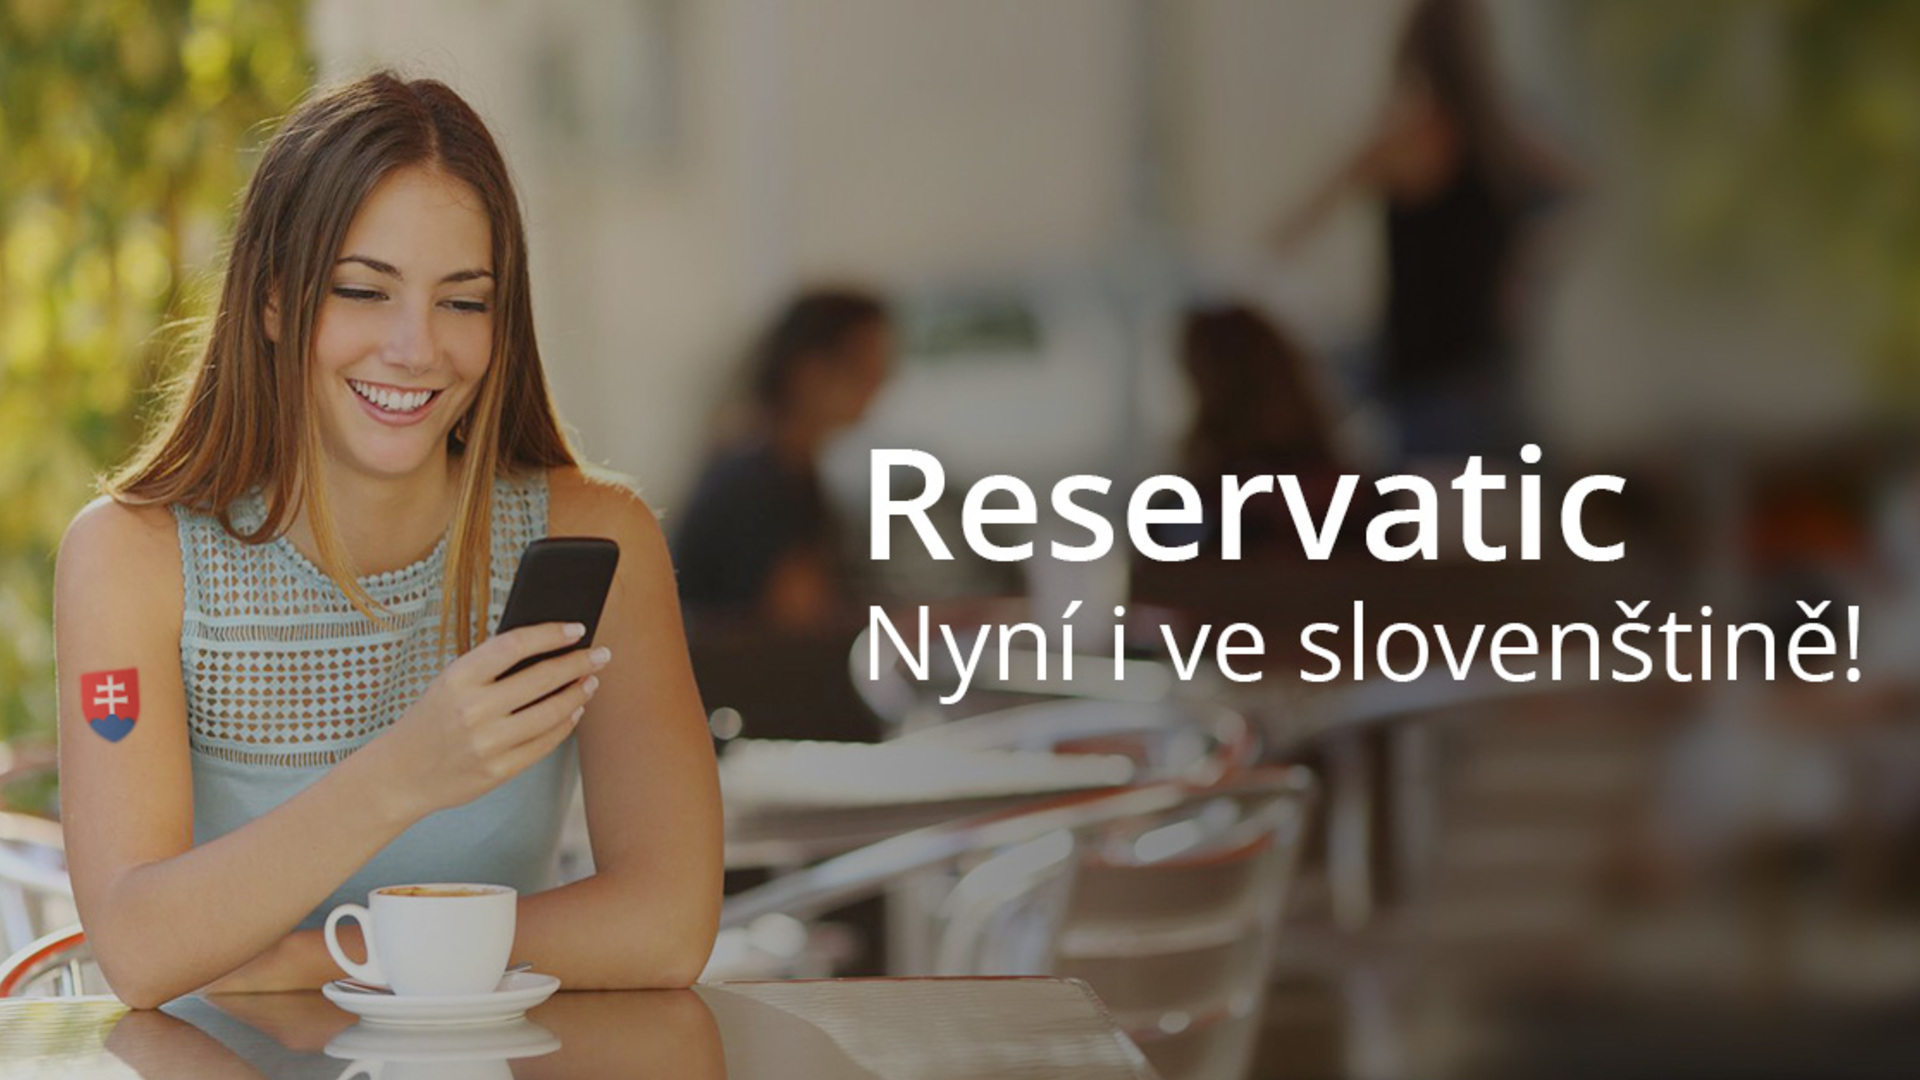 Reservatic je nyní ve slovenštině